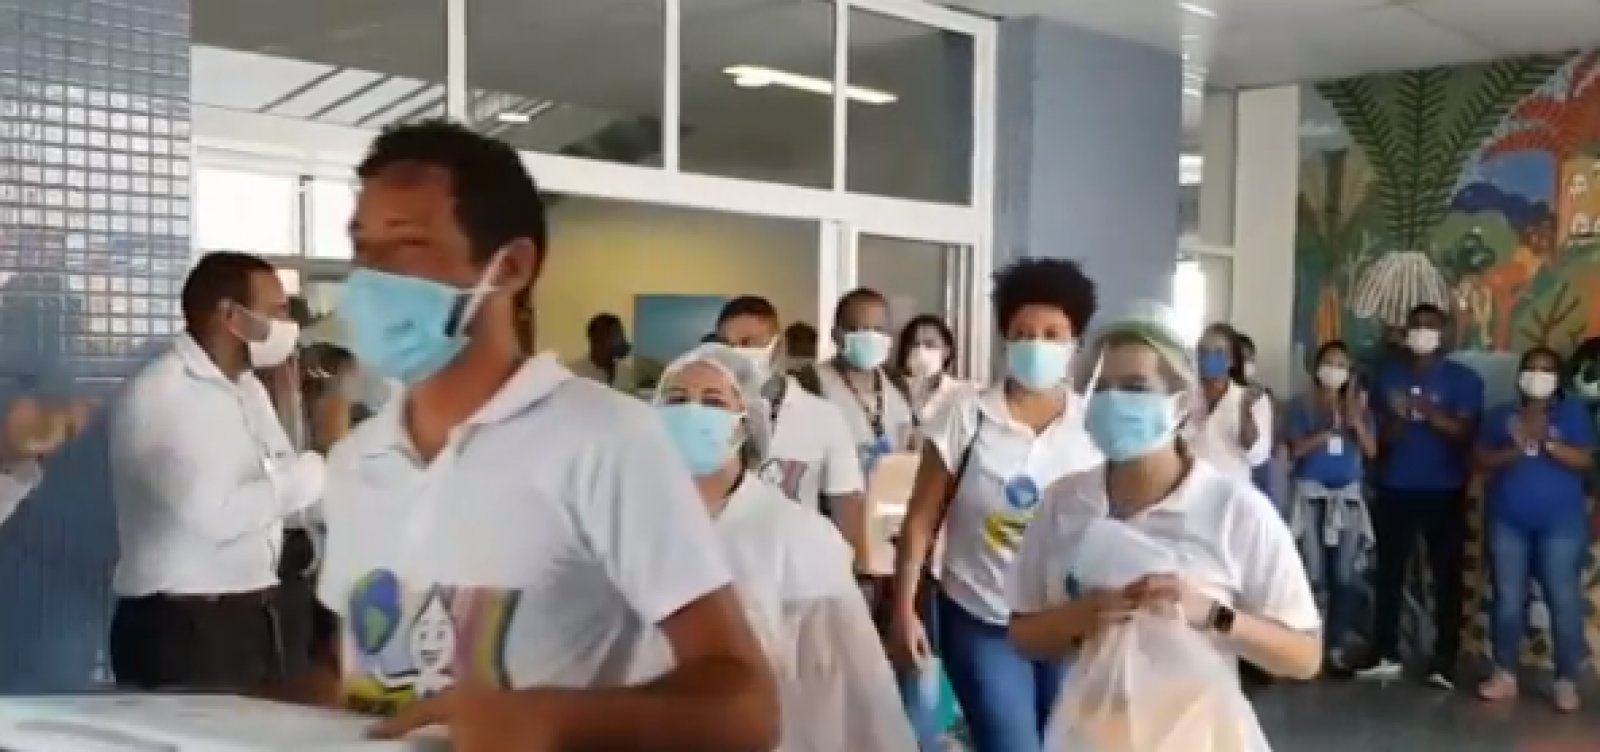 Sob aplausos dos trabalhadores de saúde, equipe encerra vacinação no Hospital Municipal de Salvador